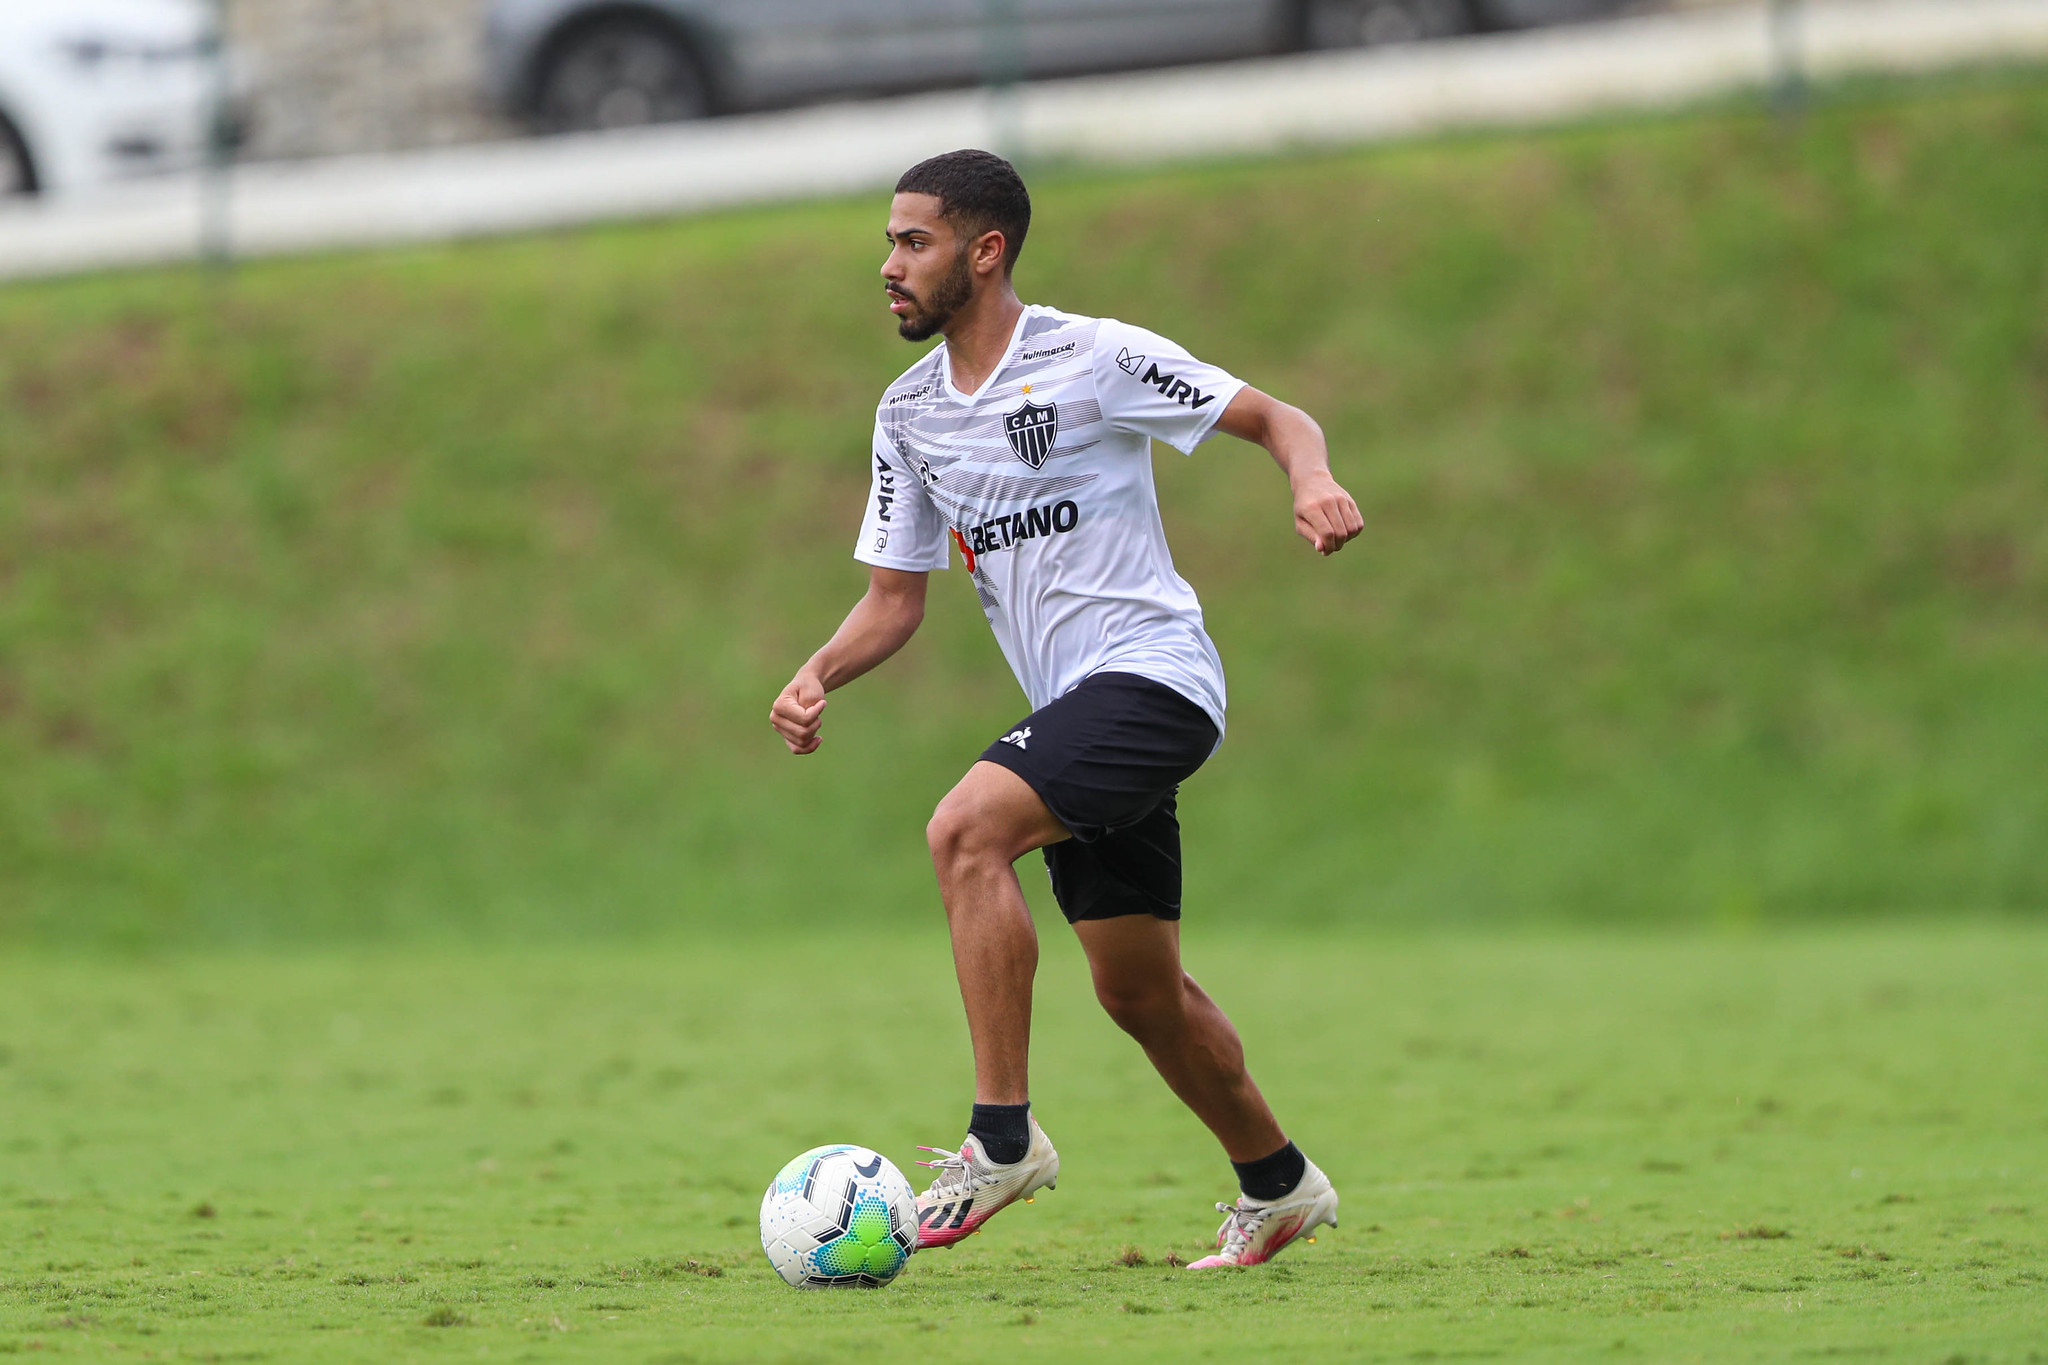 Com empréstimo chegando ao fim, Calebe revela desejo de permanecer no Atlético-MG para disputar a Libertadores